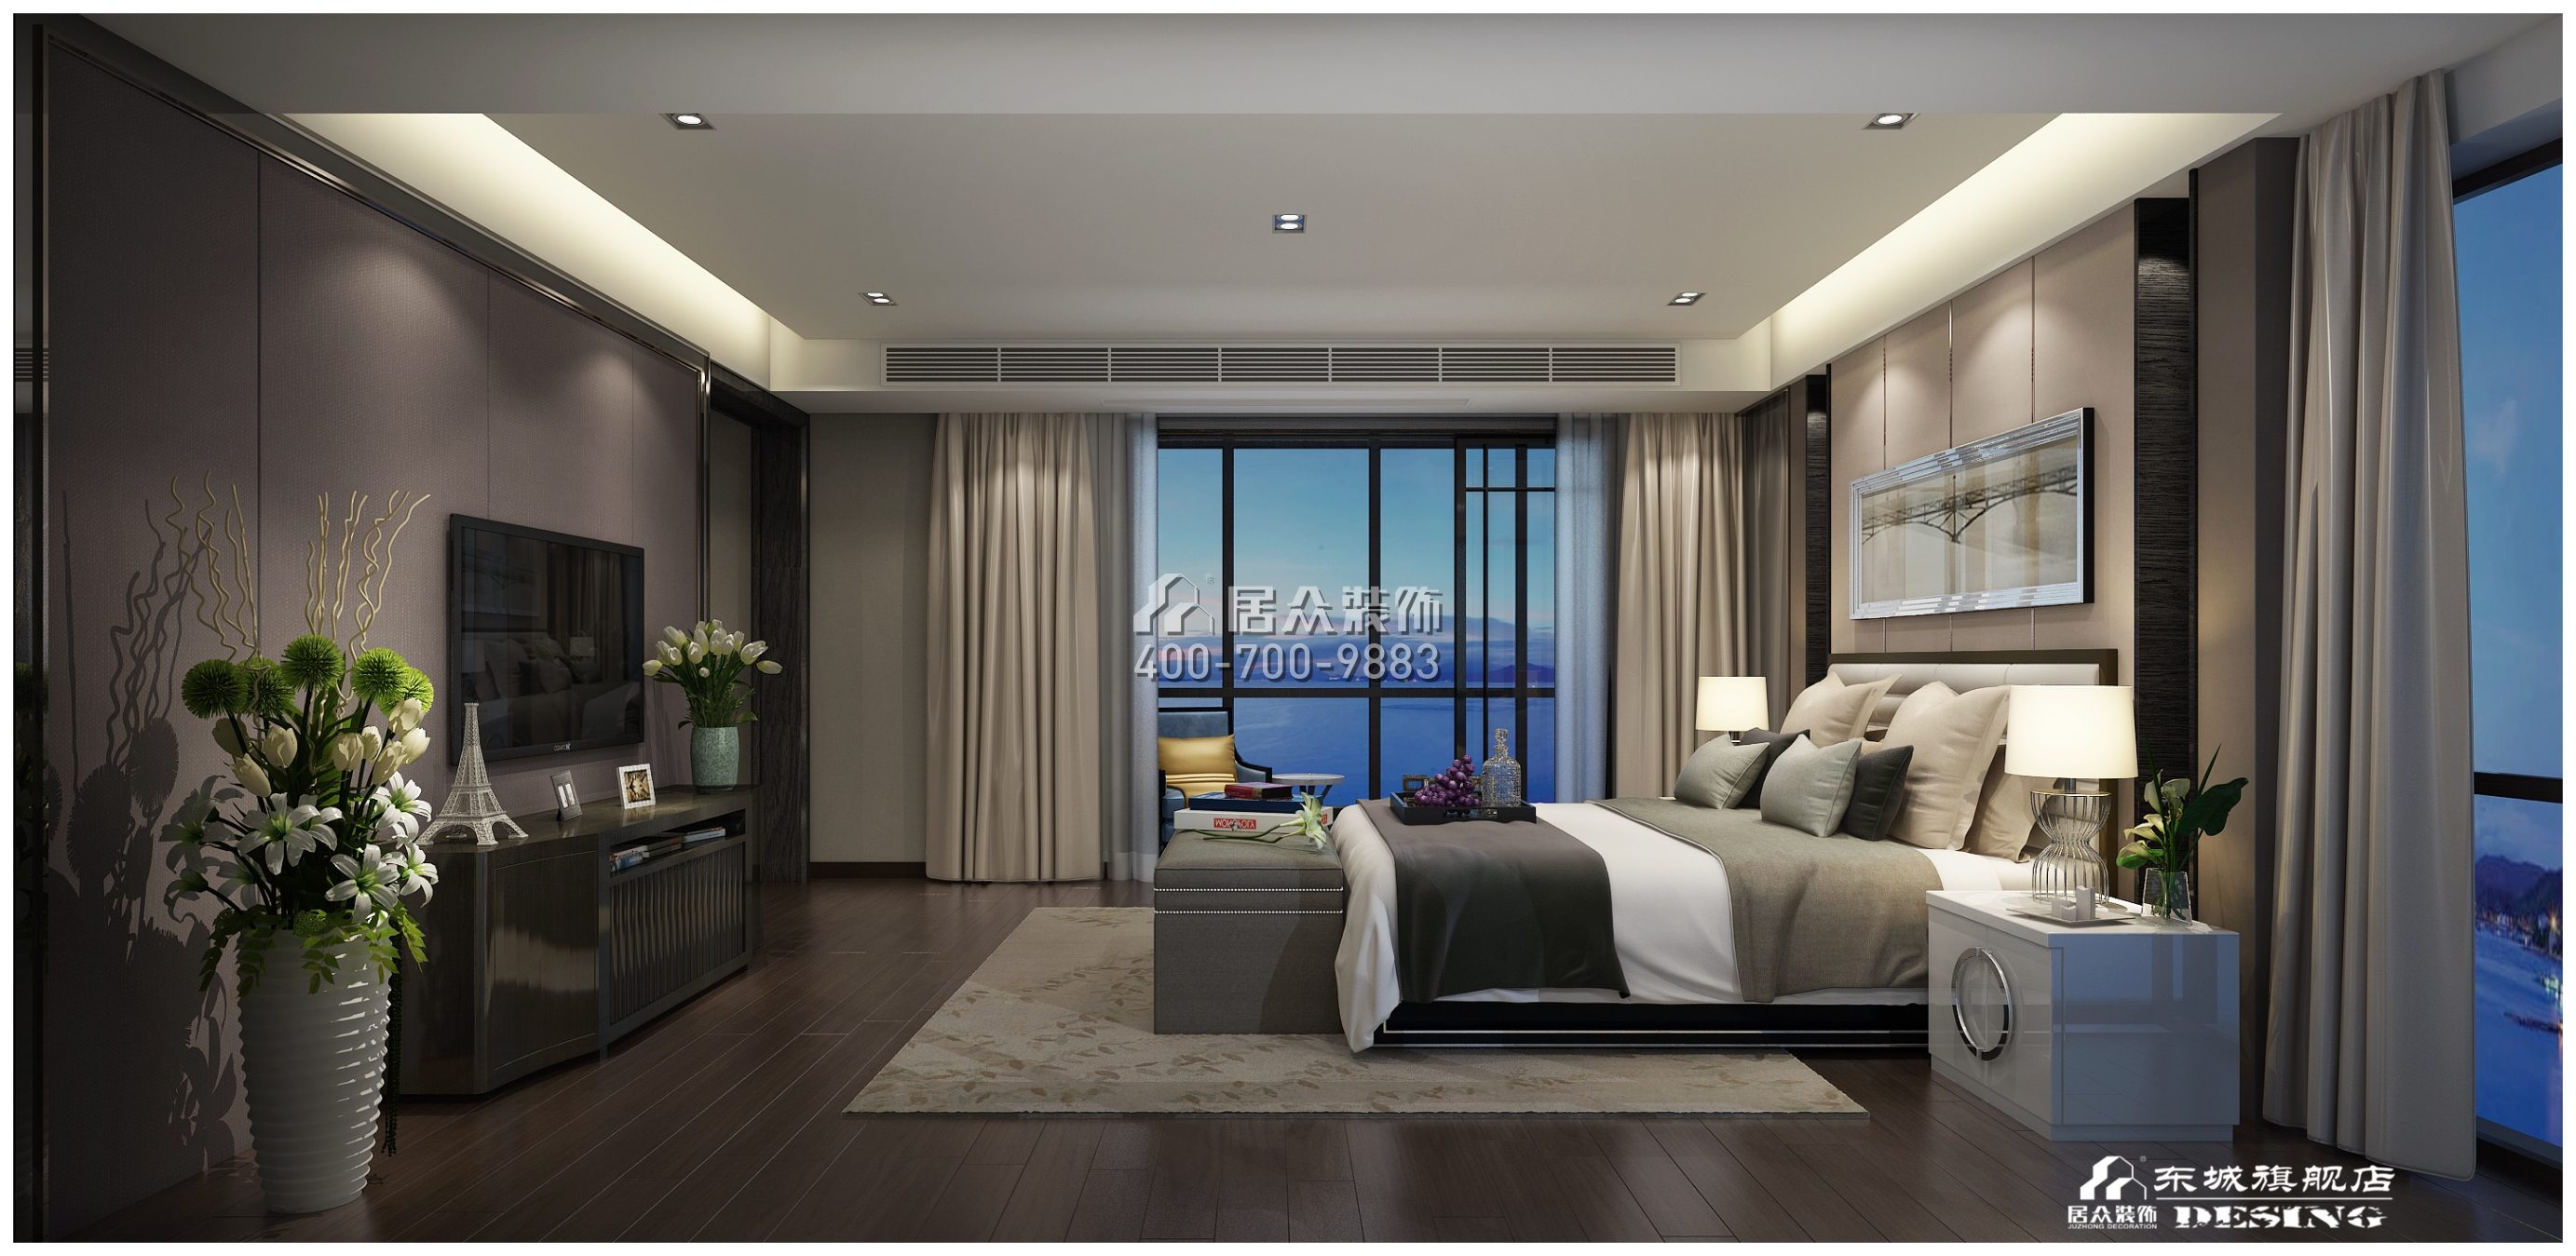 北辰定江洋285平方米現代簡約風格平層戶型臥室裝修效果圖